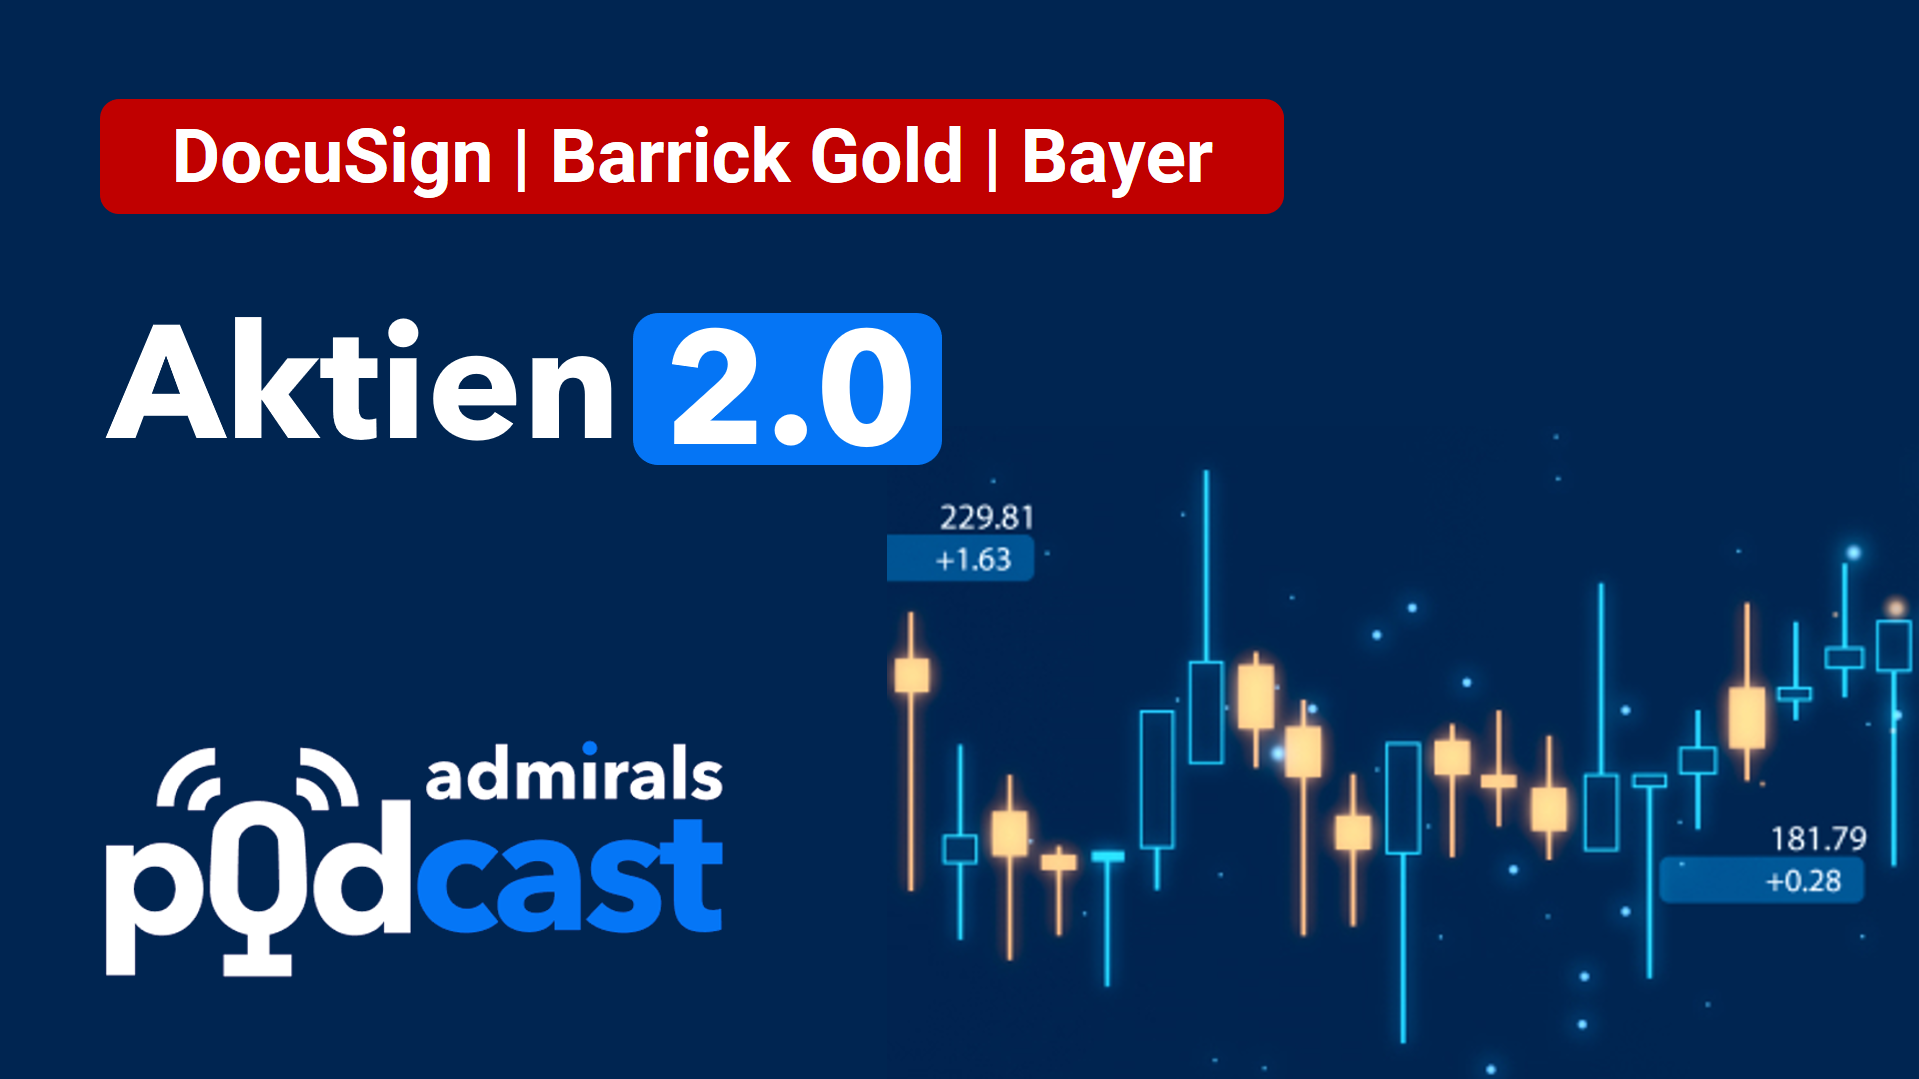 PODCAST-Aktien-2-0-DocuSign-Barrick-Gold-Bayer-Die-heißesten-Aktien-vom-10-06-22-Jens-Chrzanowski-GodmodeTrader.de-1